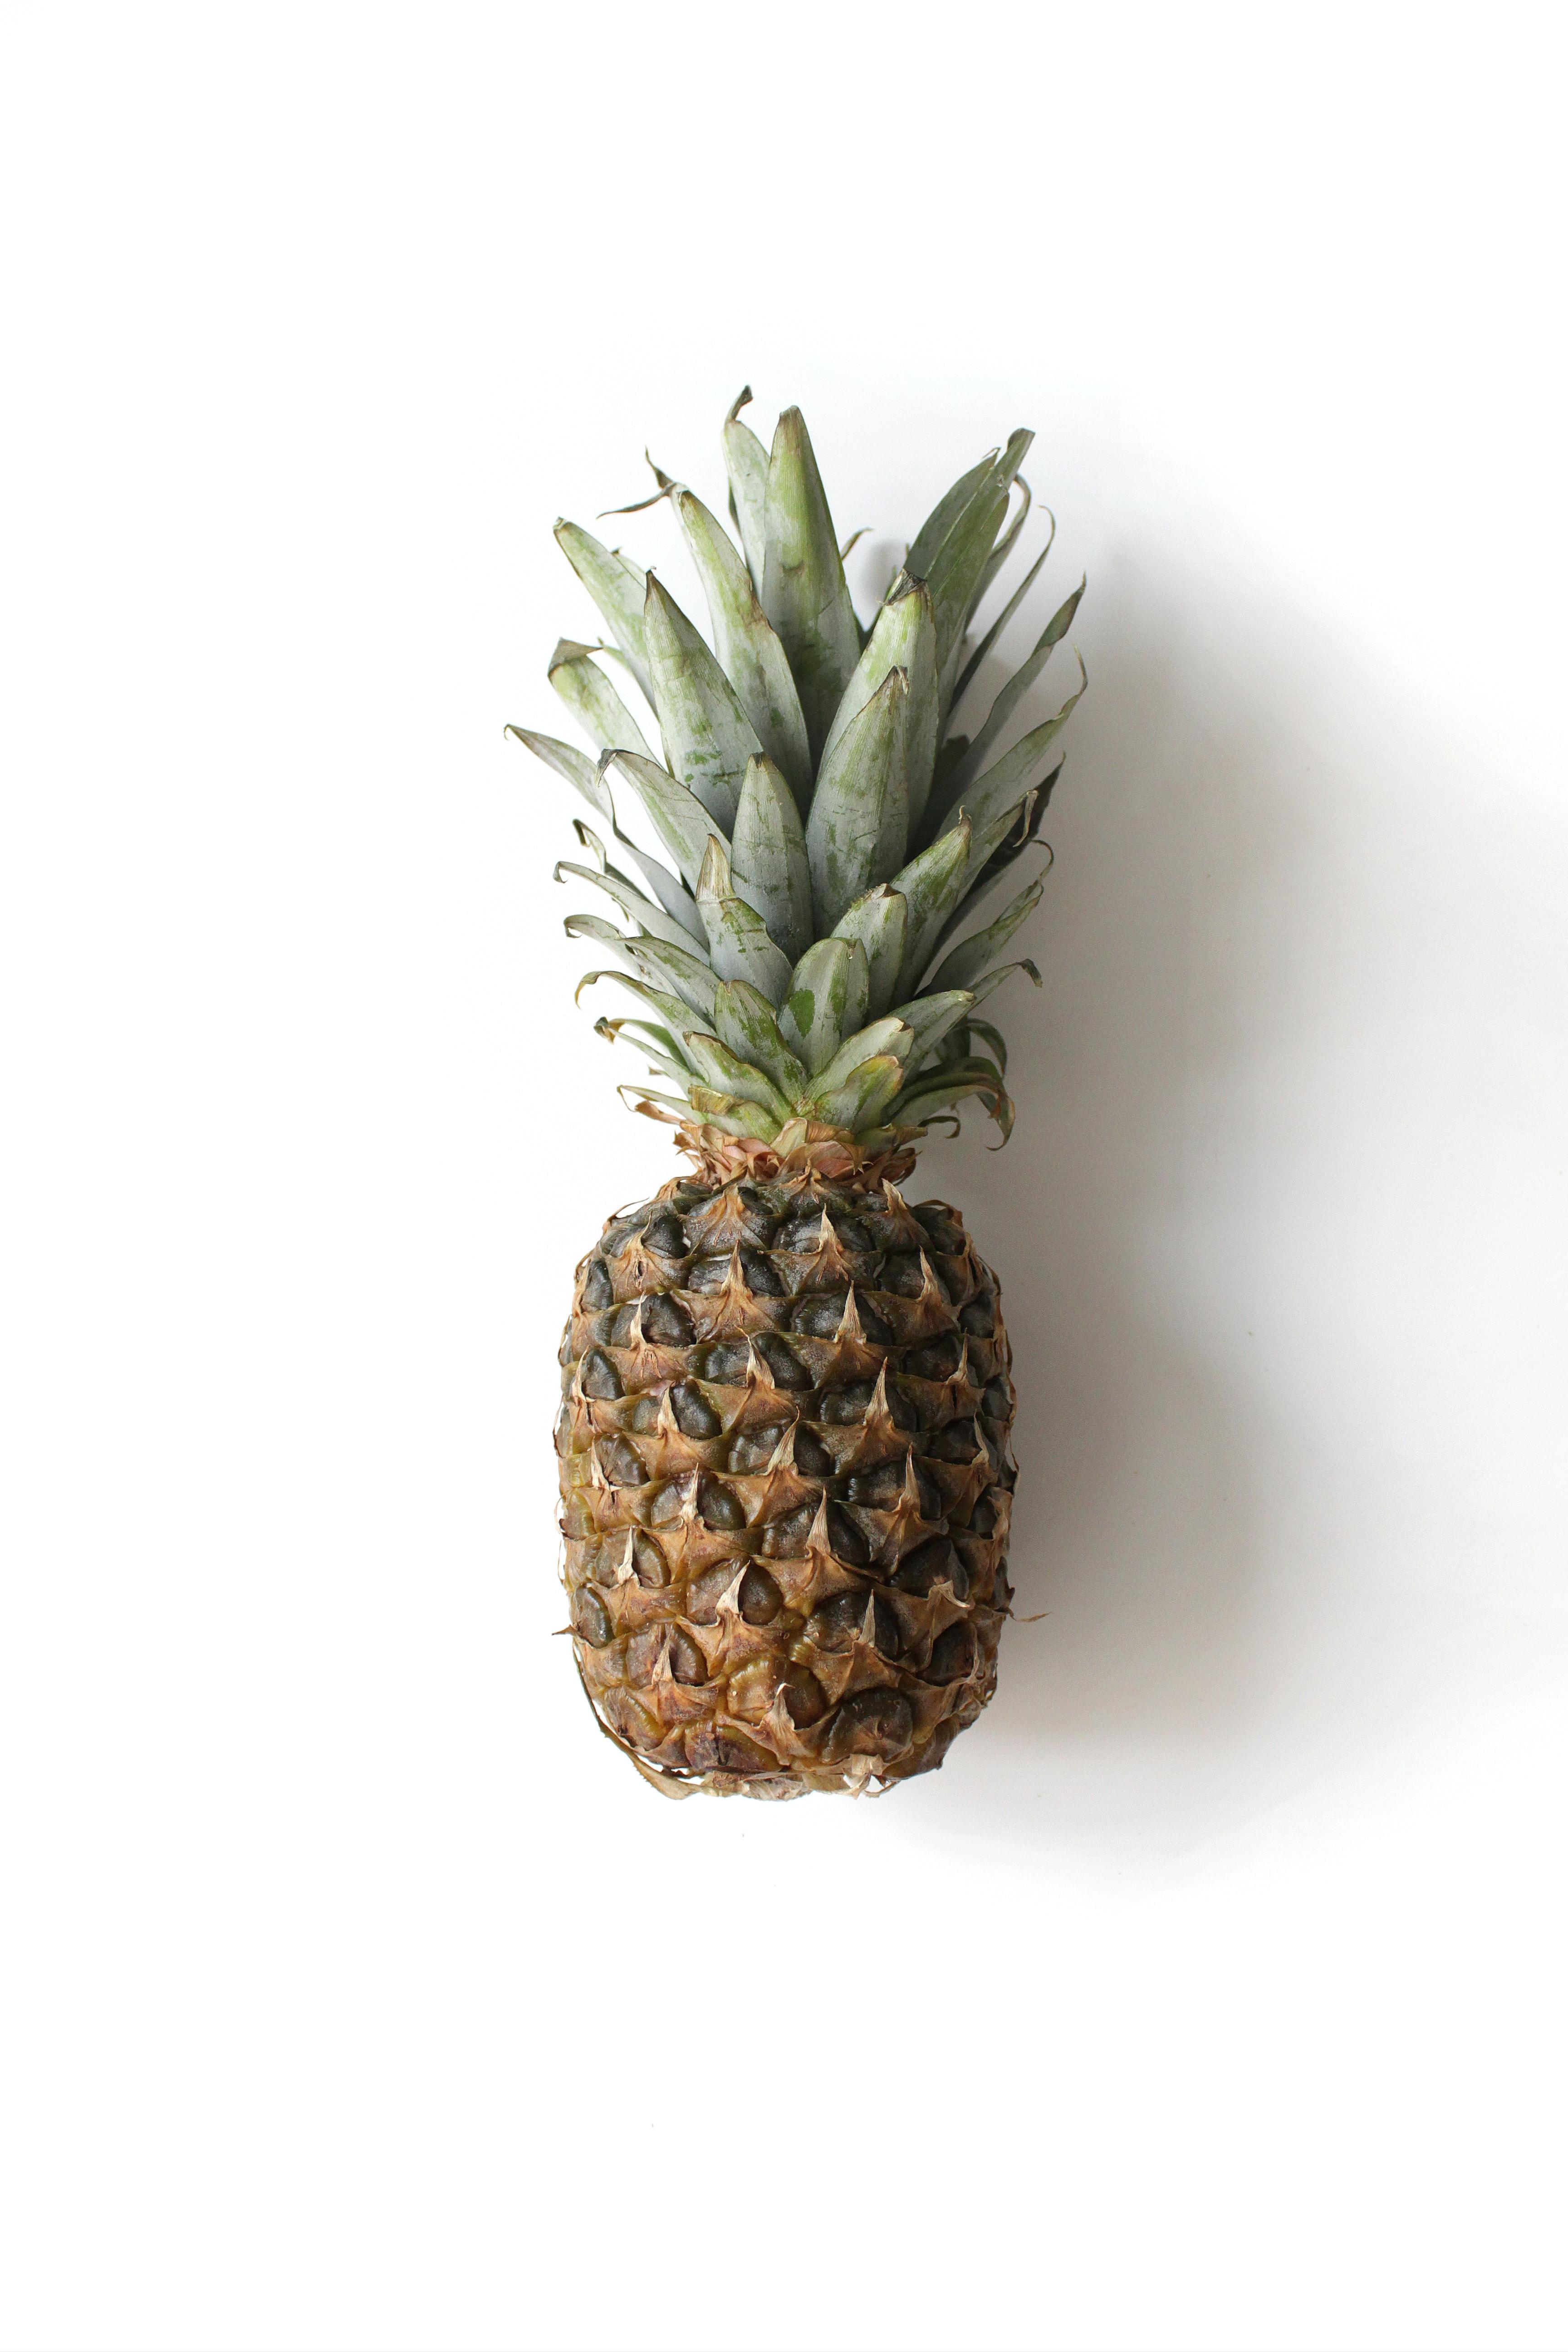 Ananas - czy jest zdrowy? Odkryj jego właściwości zdrowotne. Znaczenie lecznicze ananasa 